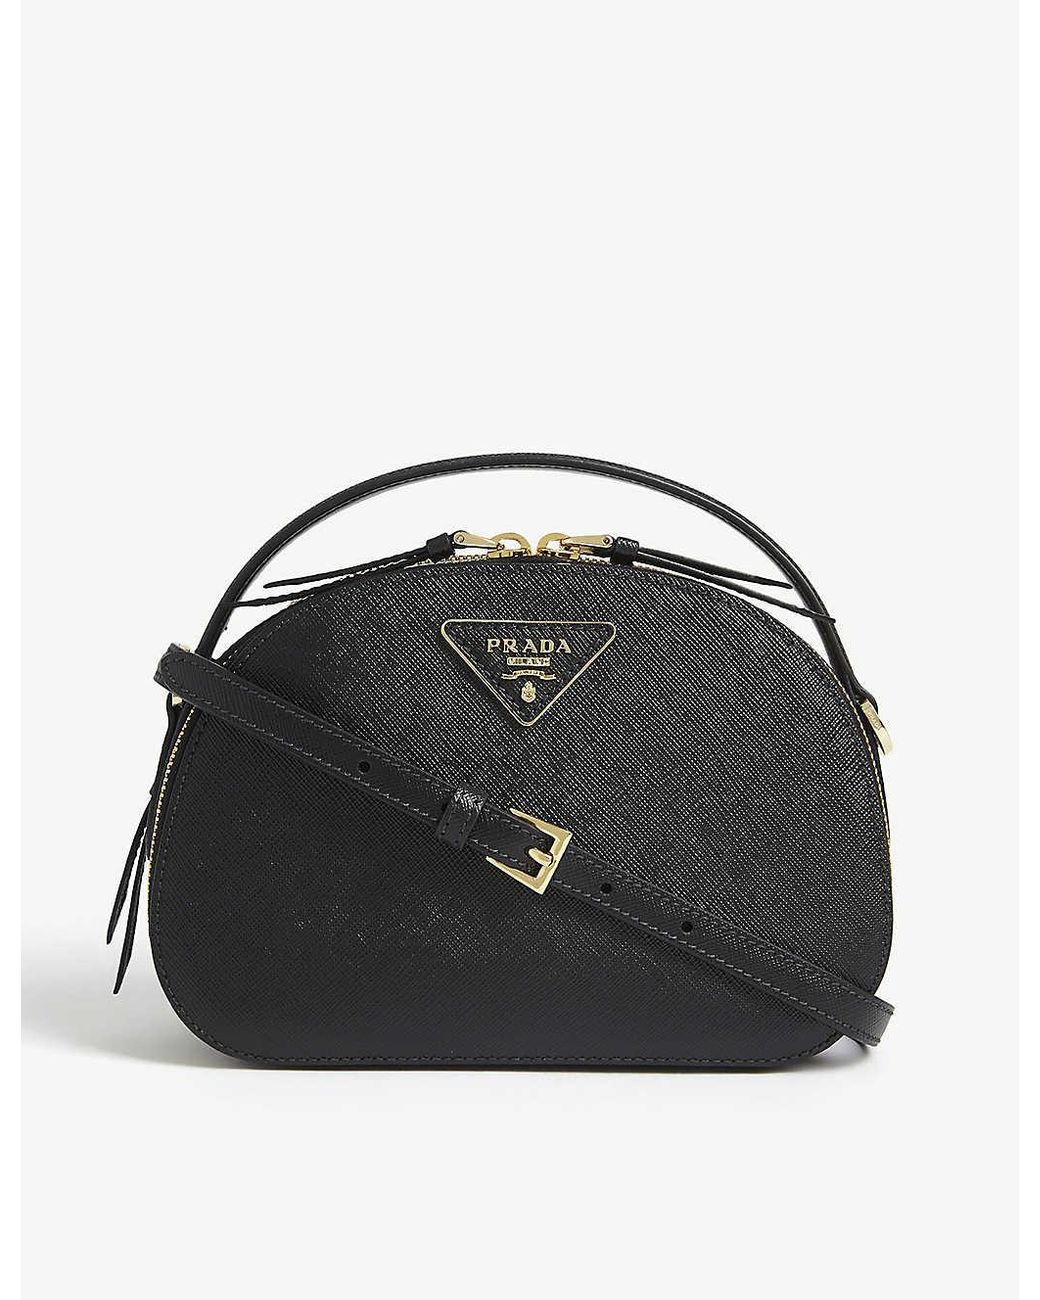 Prada Odette Saffiano Lux Nero Black Mini Backpack